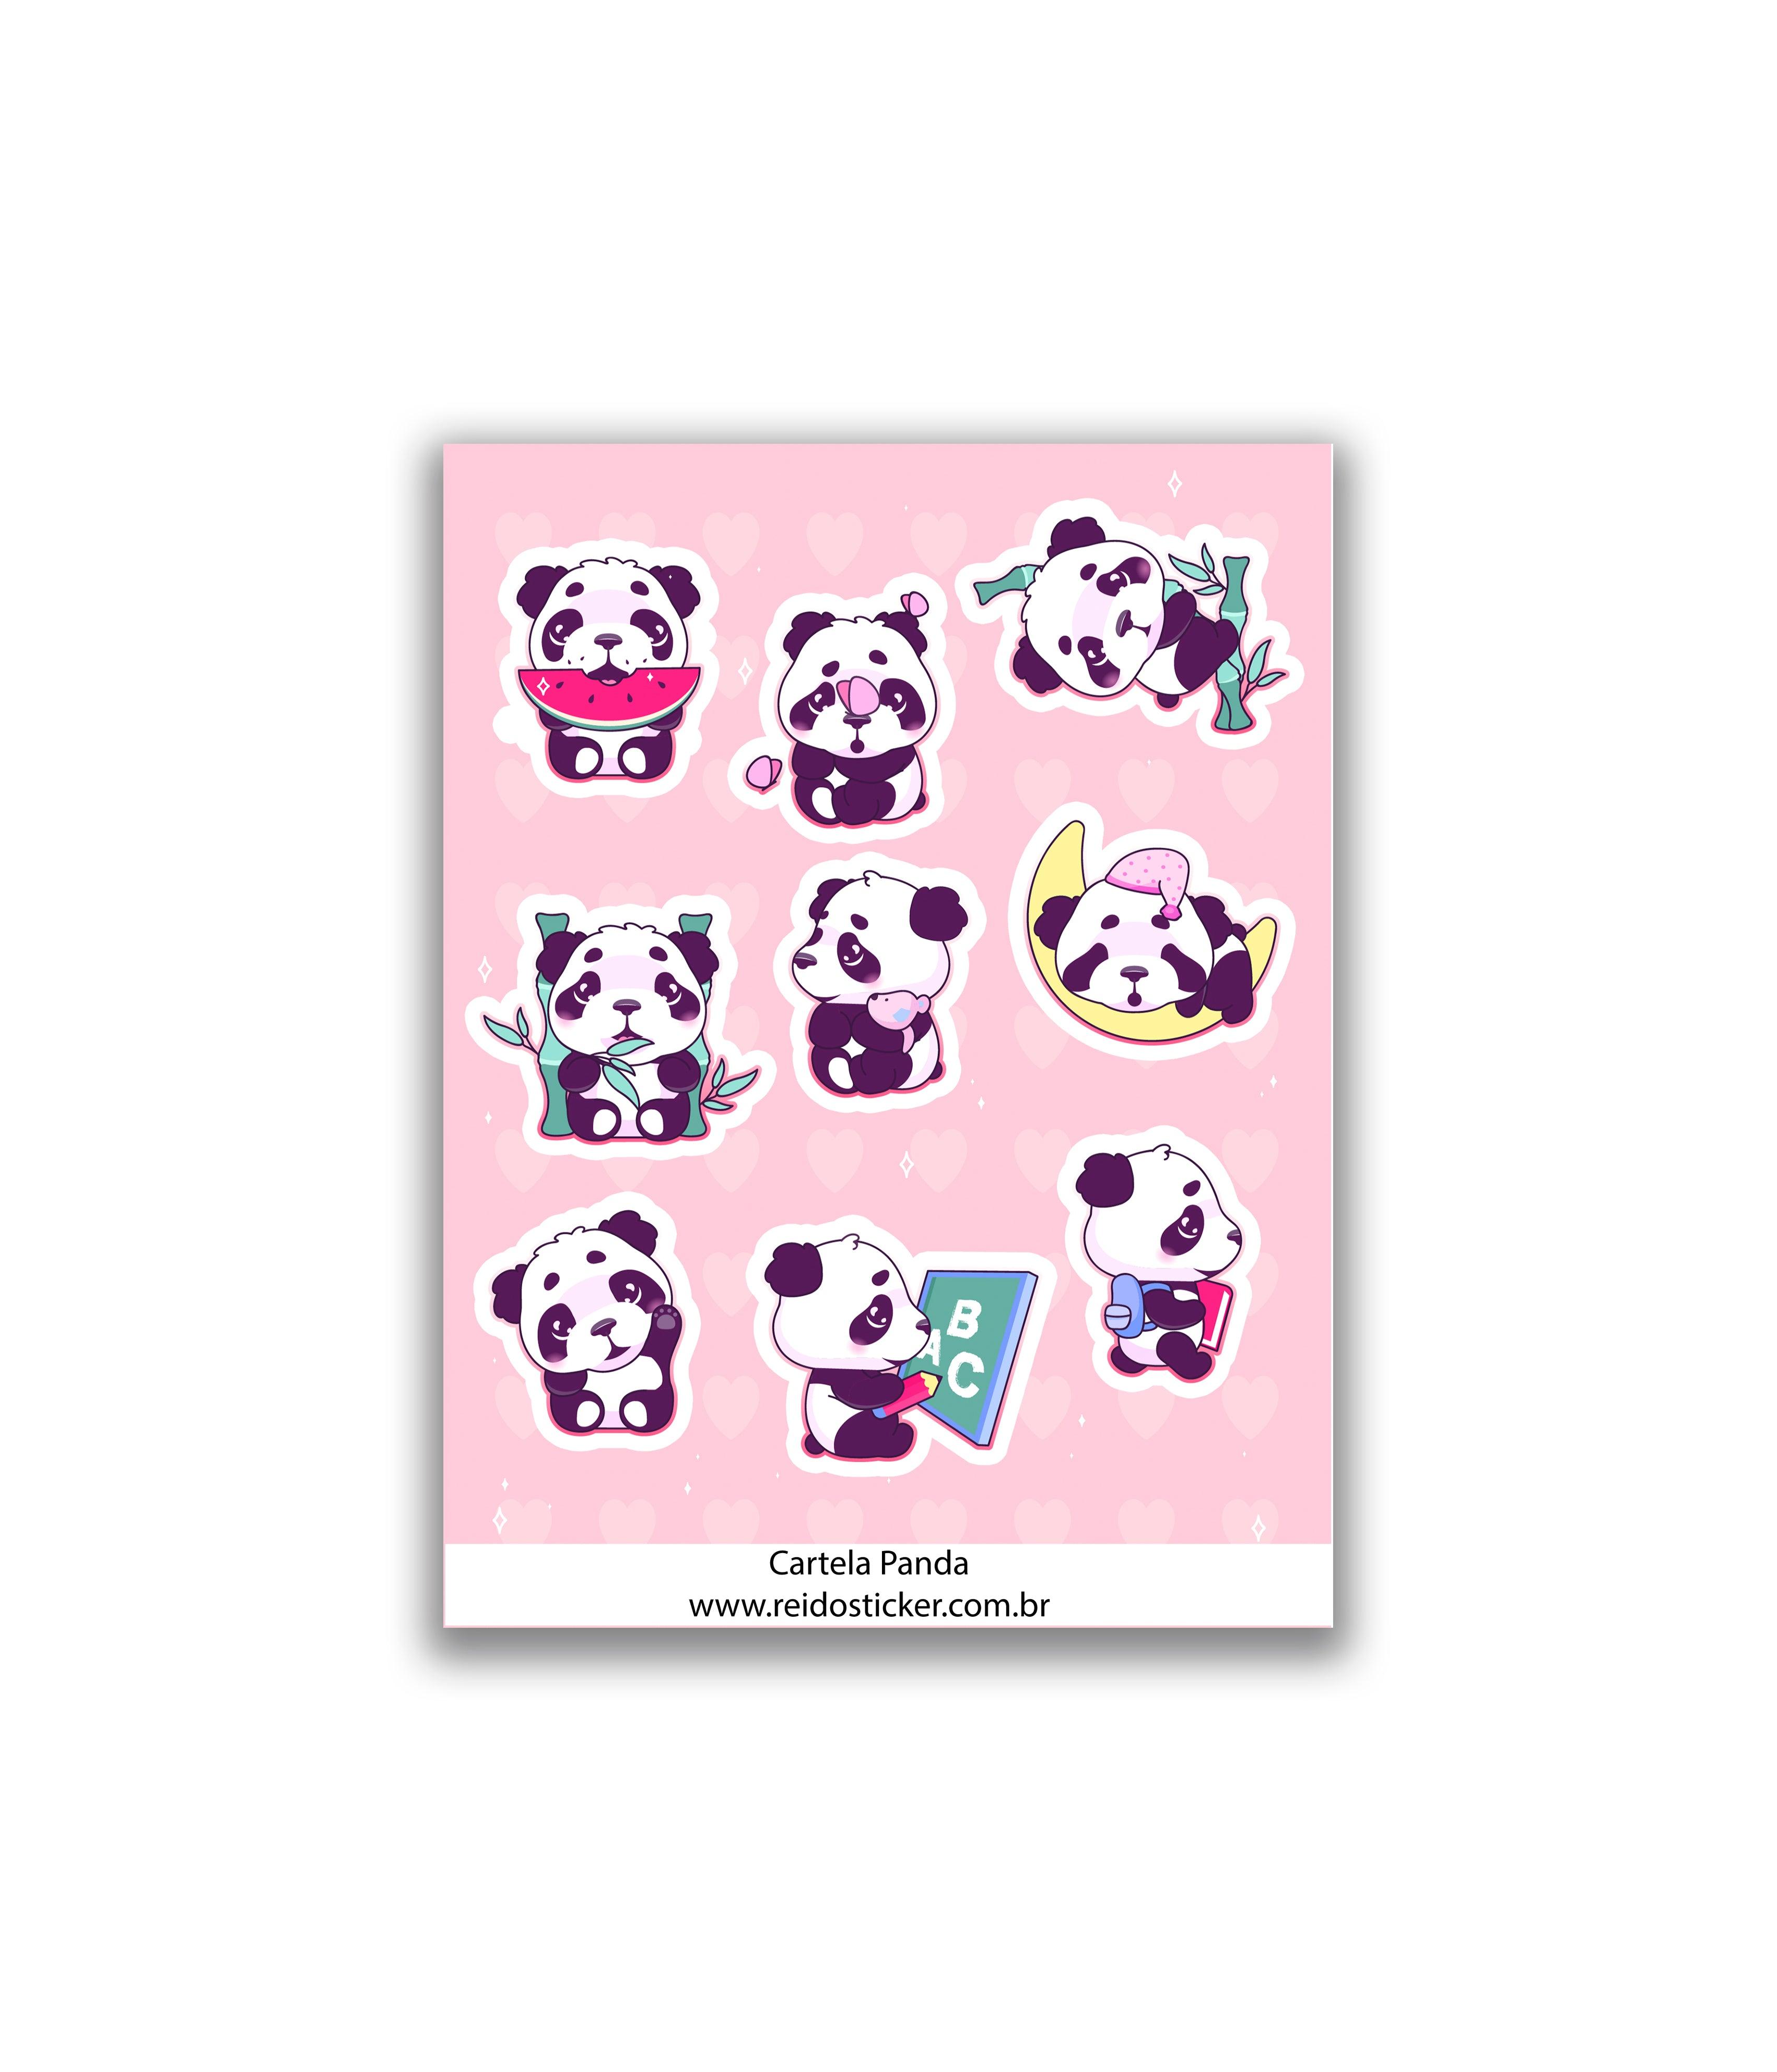 Cartela Panda - Rei do Sticker